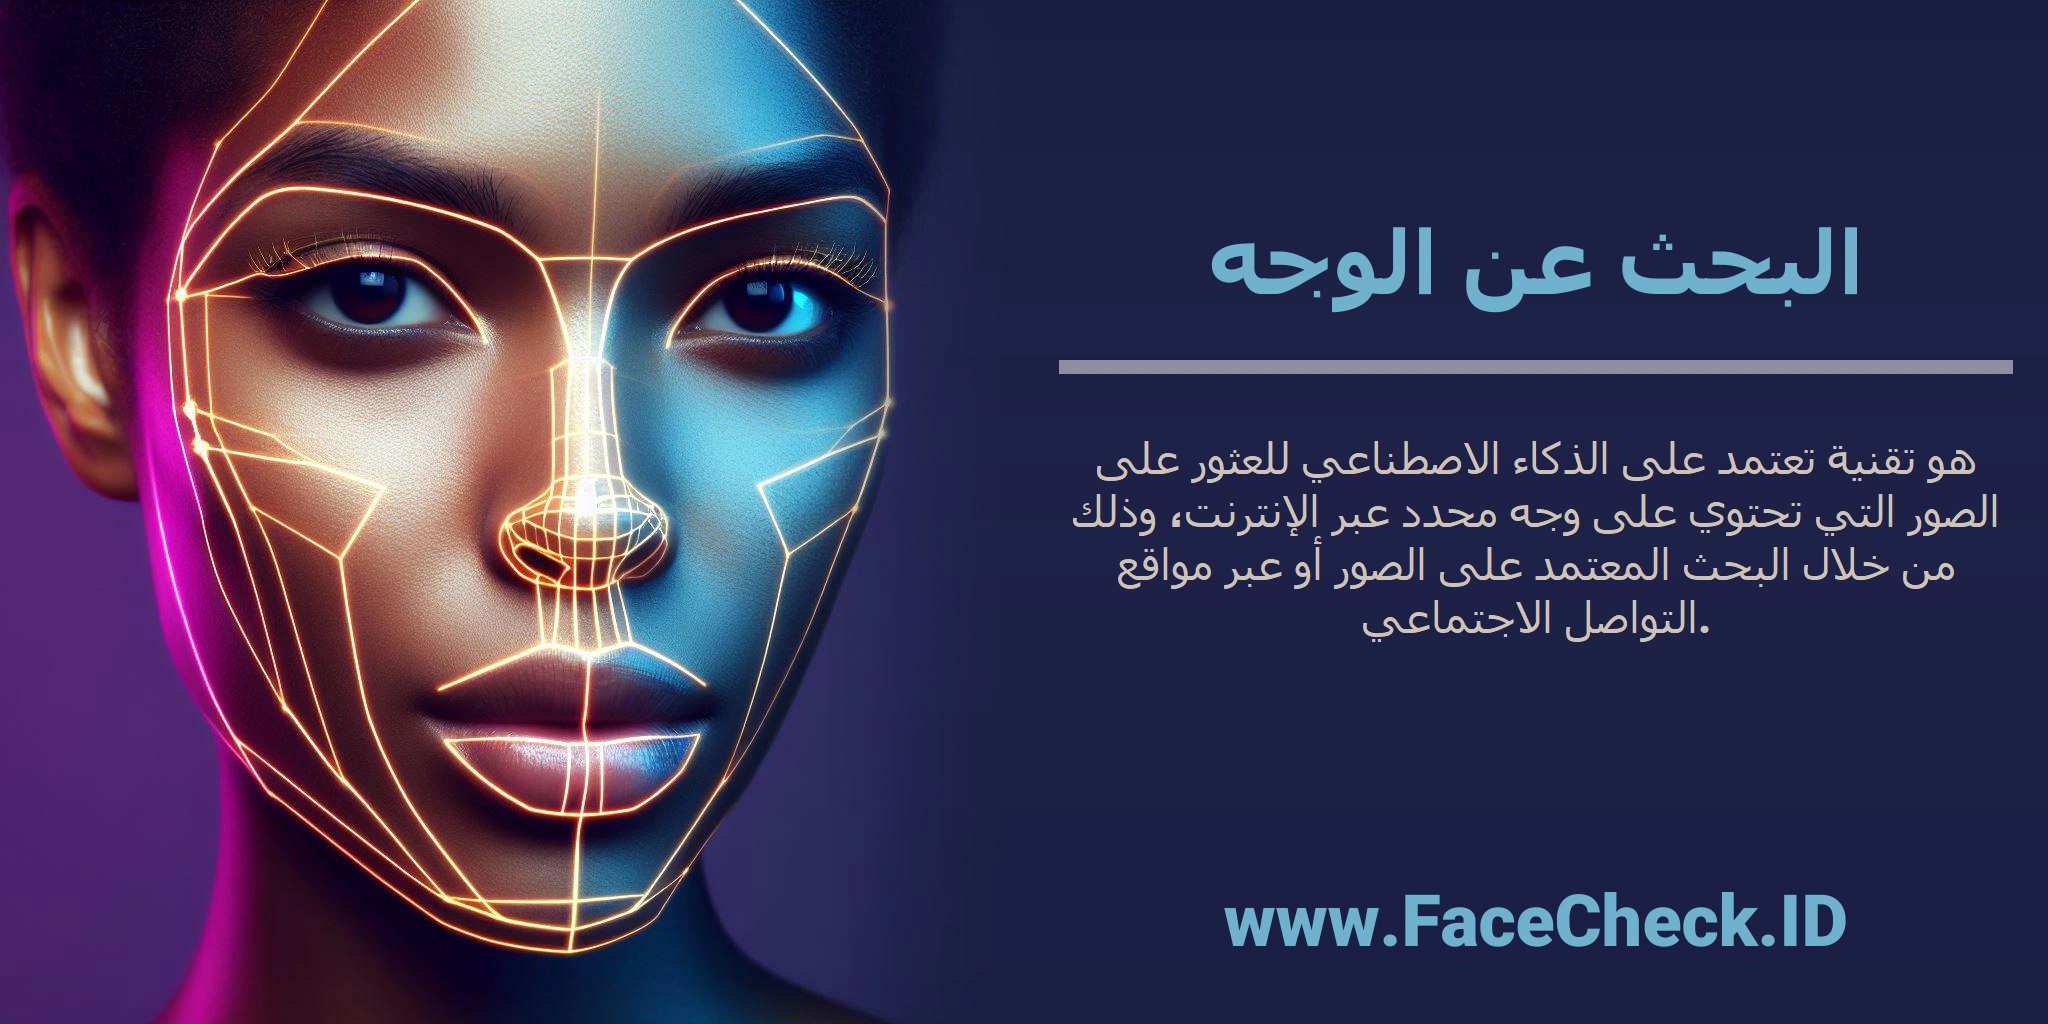 <b>البحث عن الوجه</b> هو تقنية تعتمد على الذكاء الاصطناعي للعثور على الصور التي تحتوي على وجه محدد عبر الإنترنت، وذلك من خلال البحث المعتمد على الصور أو عبر مواقع التواصل الاجتماعي.